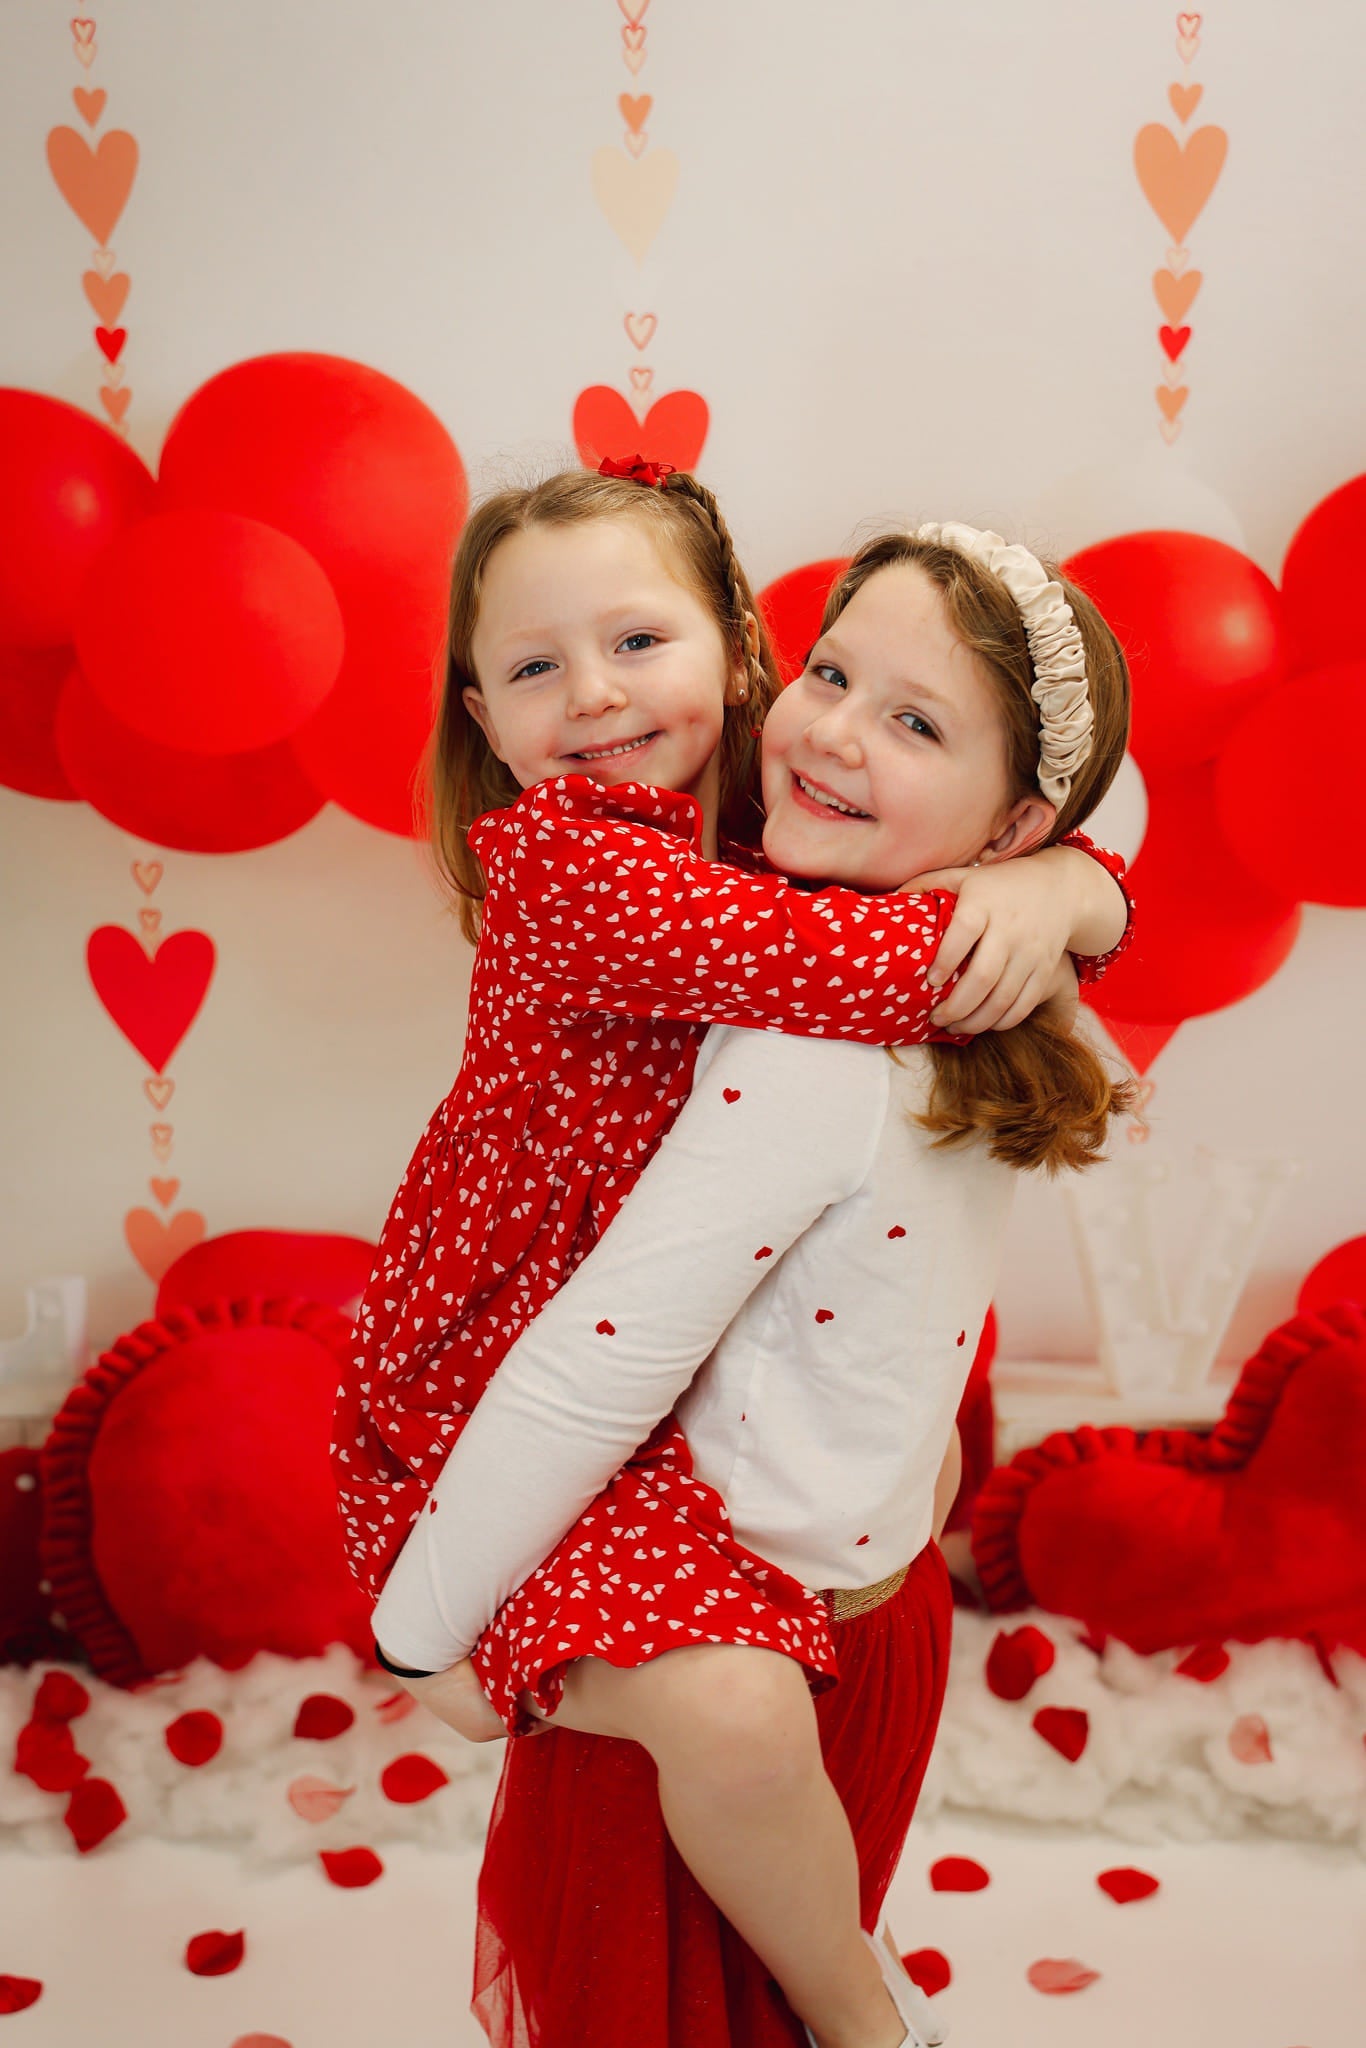 Kate Valentinstag Hintergrund Ballons Liebe Herz von Uta Mueller Photography